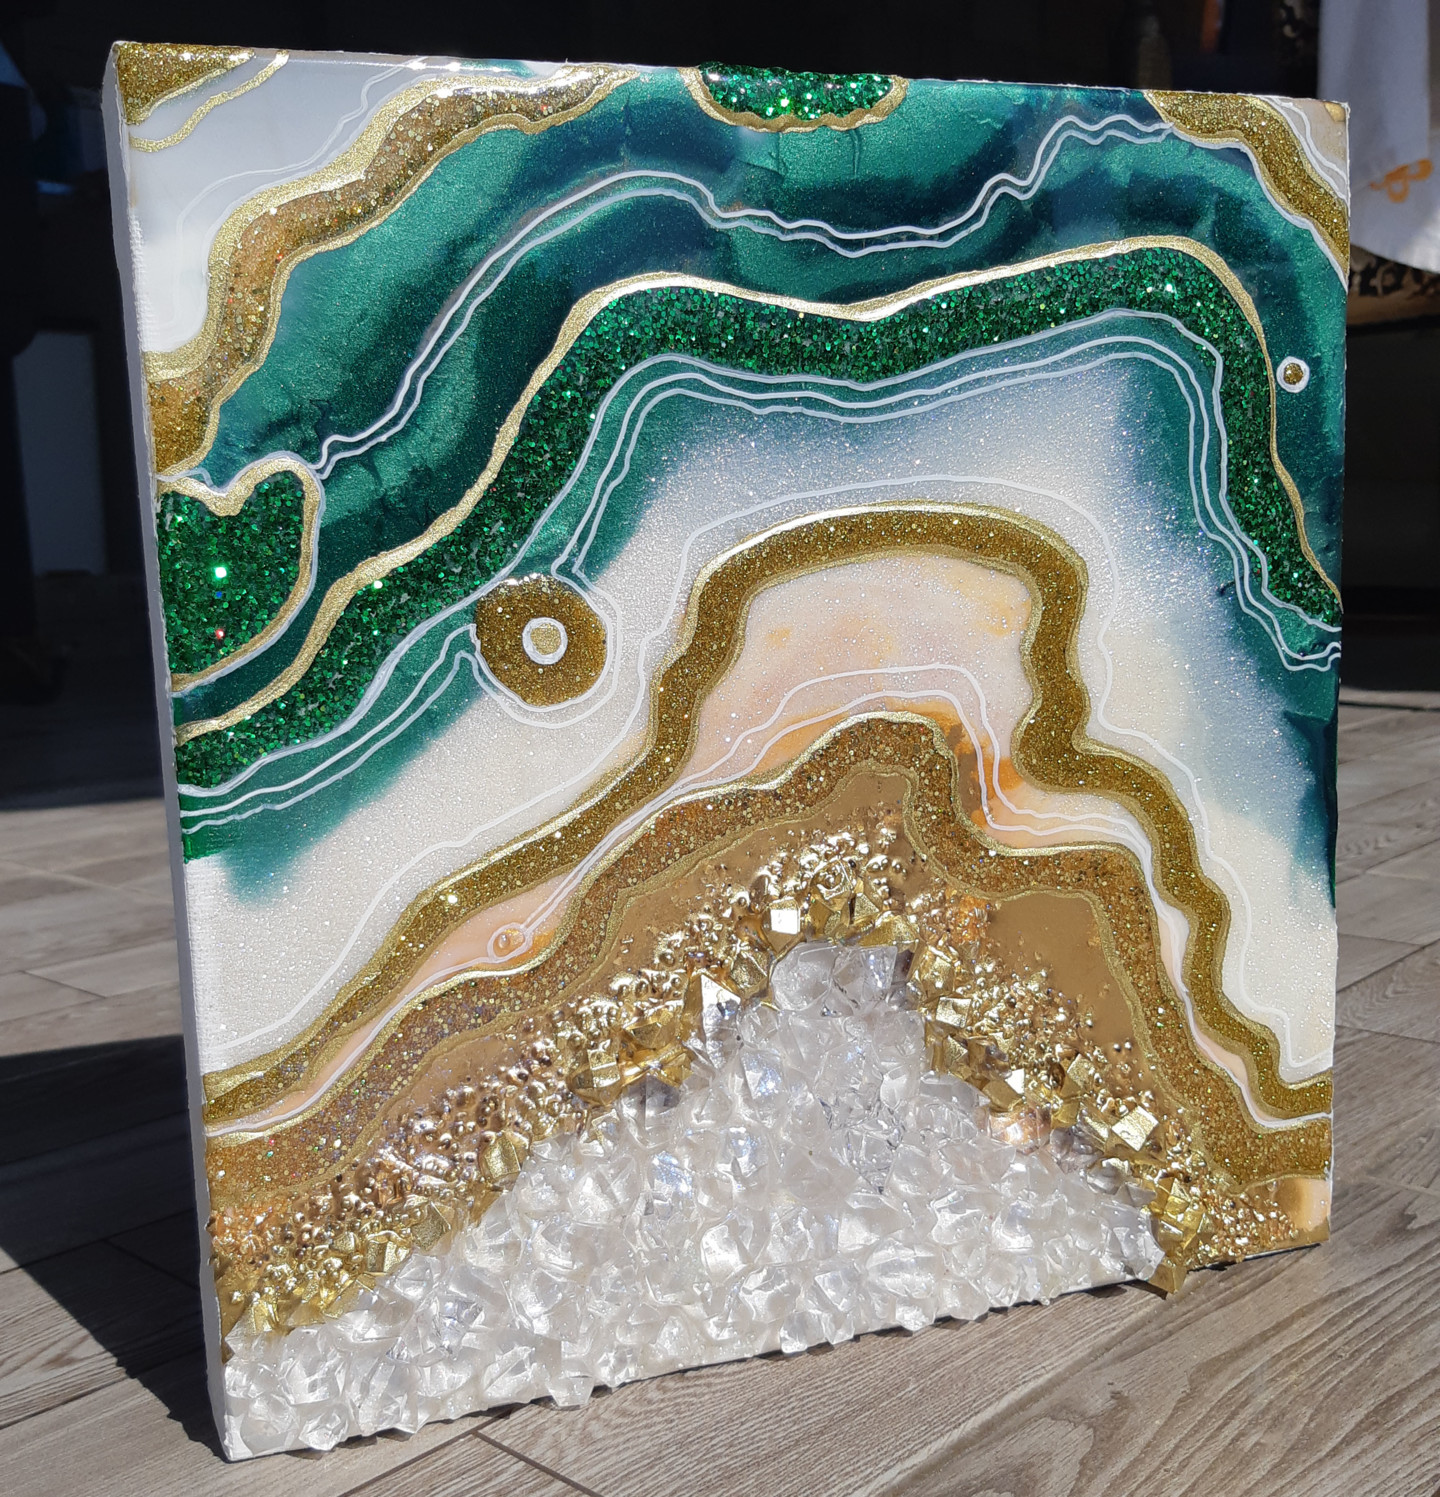 Geode / Teal Geode Art / Resin Geode / Resin Art / Epoxy Art / Modern Art /  3D Art / Quartz Points / Wall Art / Canadian Art / Artwork 